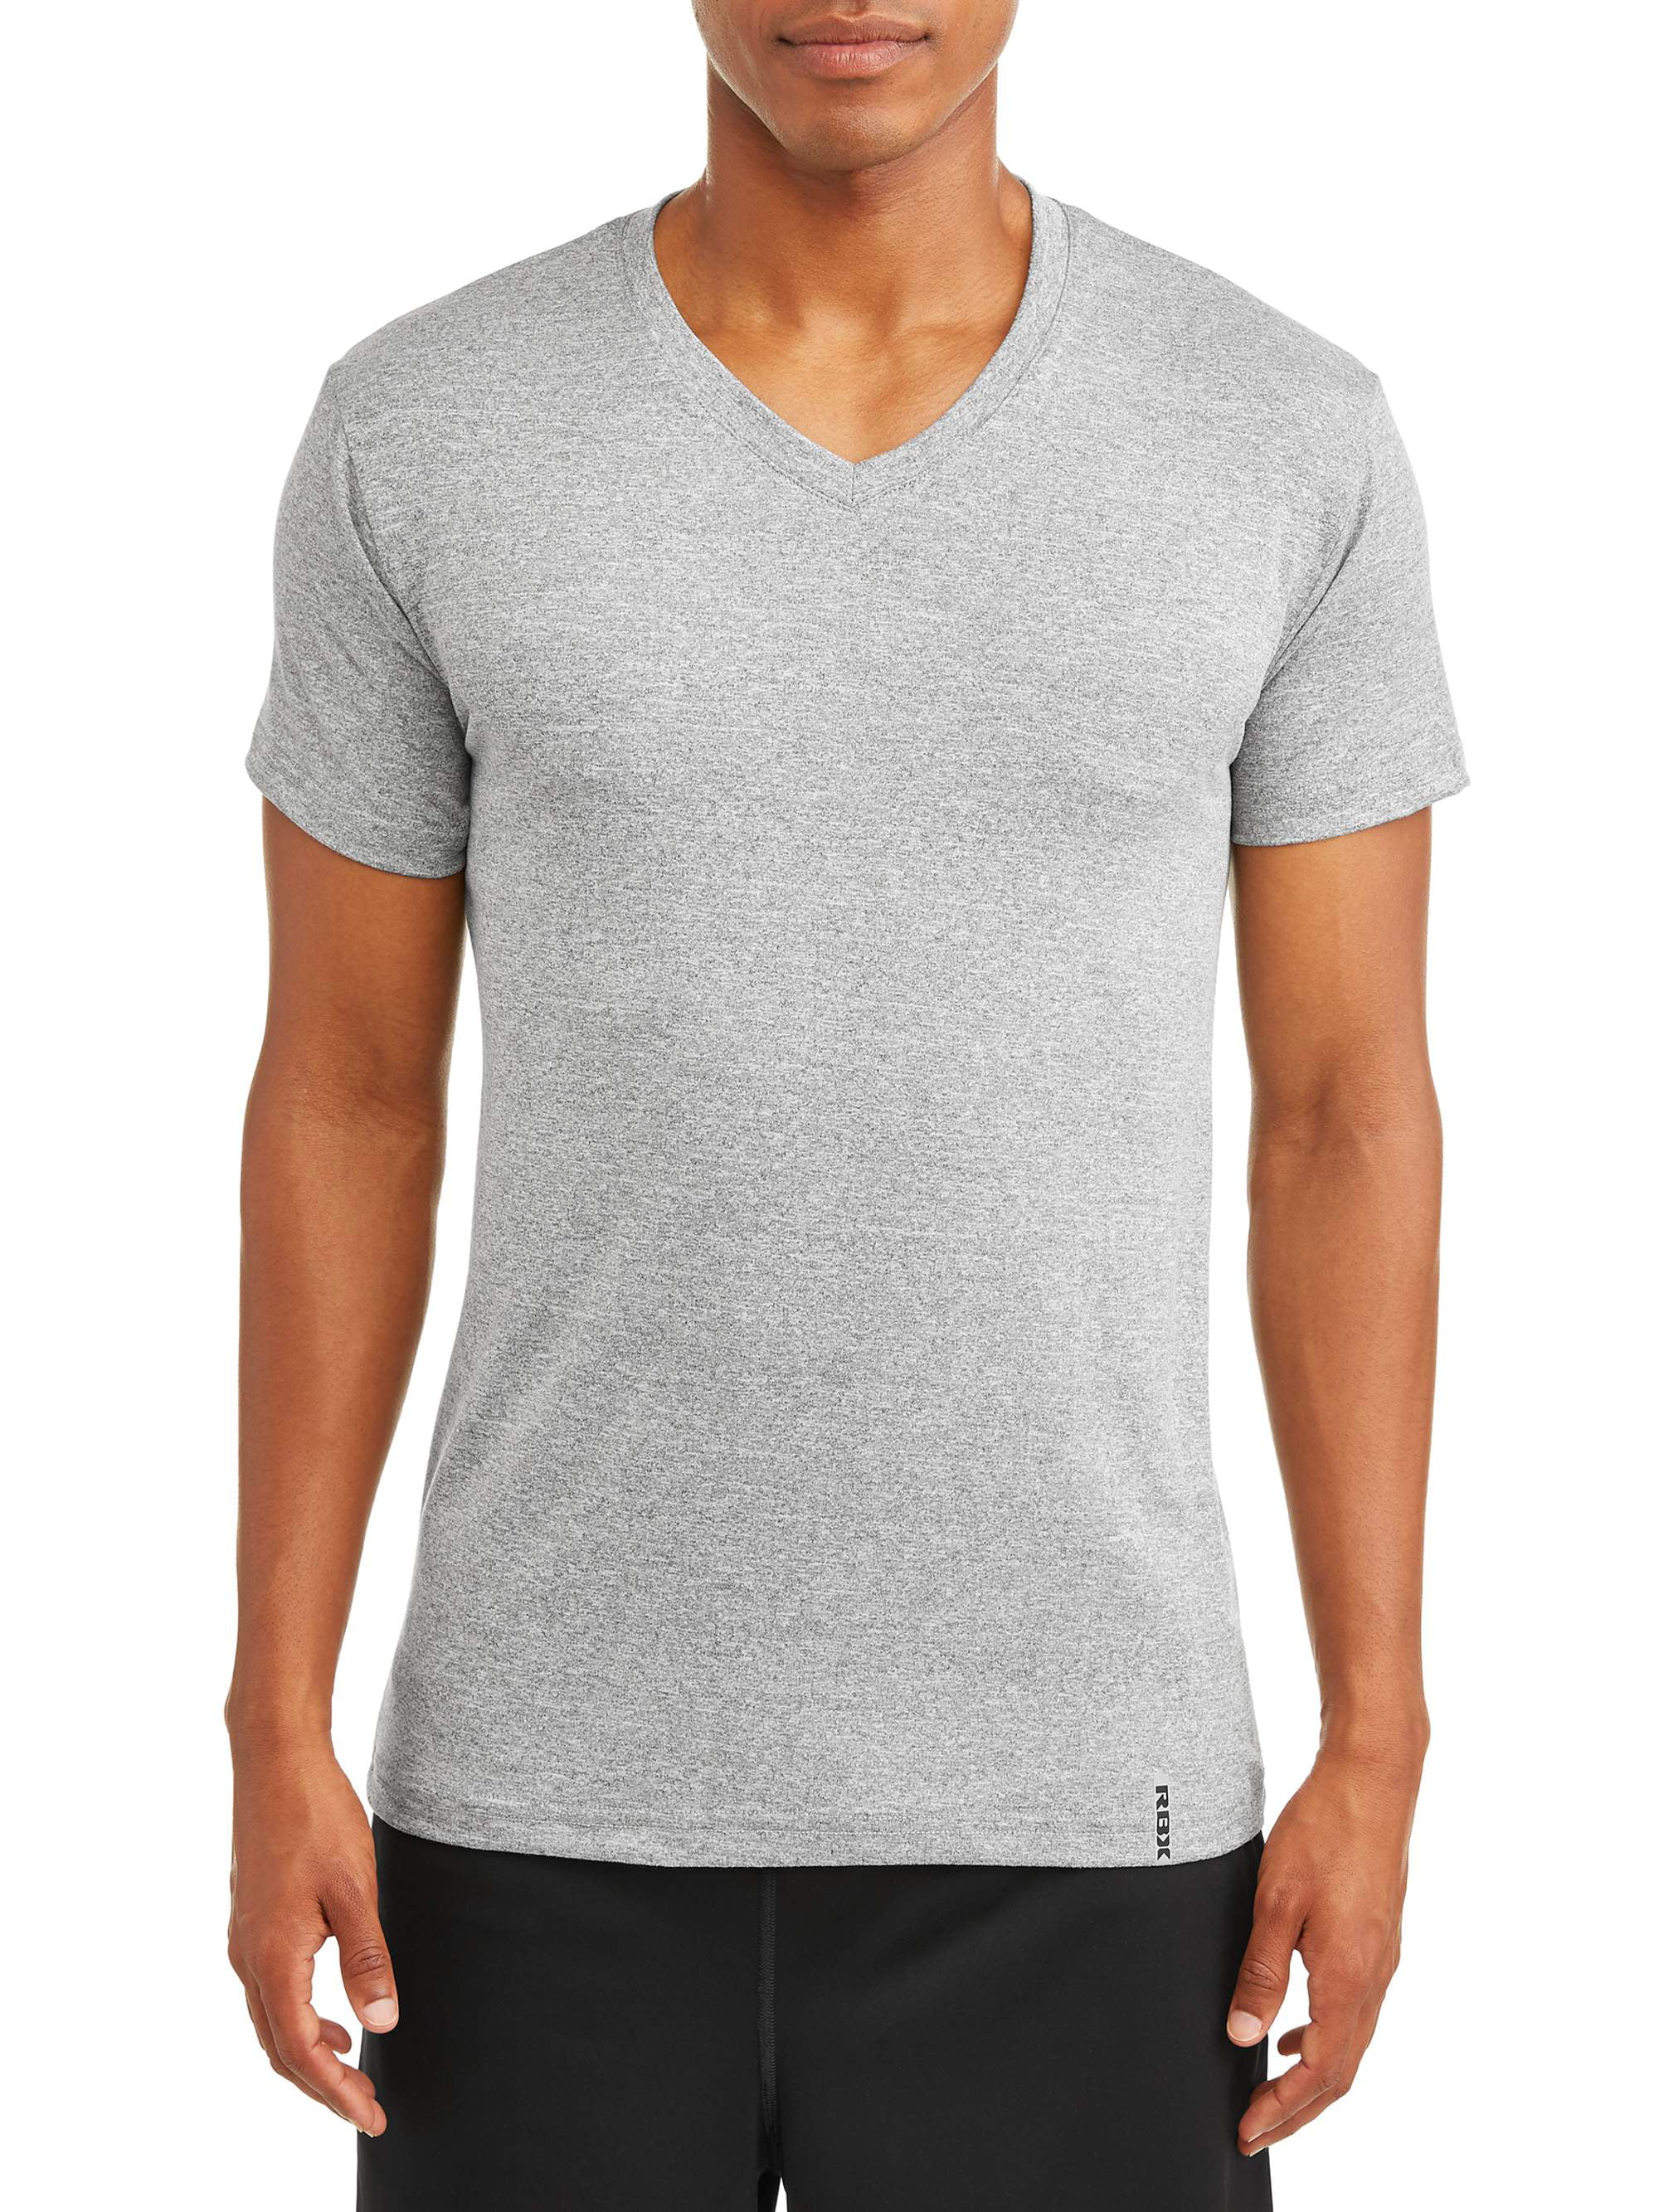 RBX Men's Ultra Soft Short-Sleeve Vee-Neck T-Shirt - Walmart.com